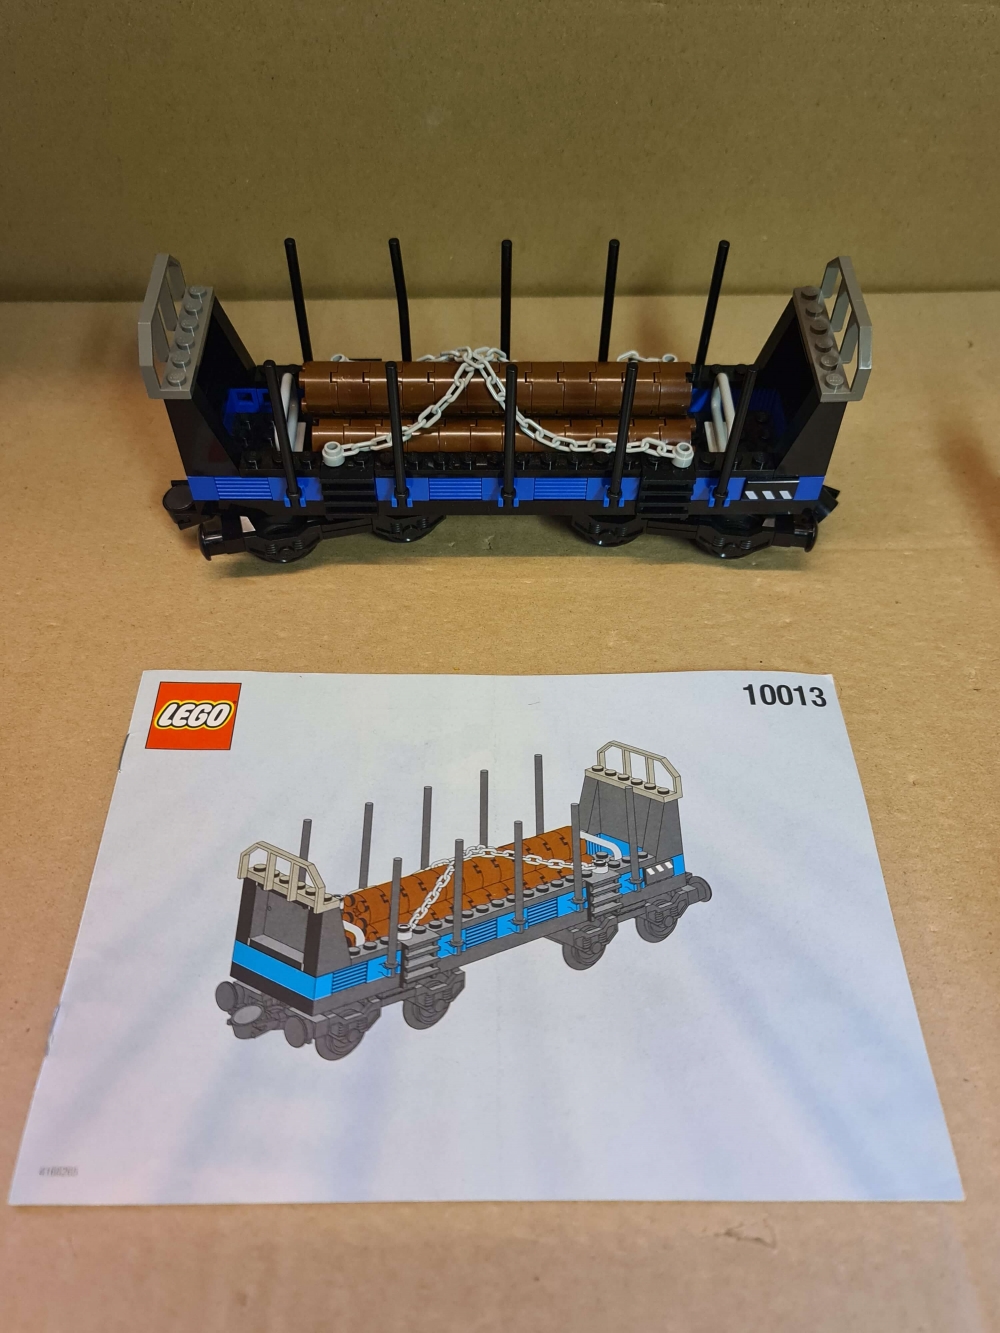 Sett 10013 fra Lego Train : 9V : My Own Train serien,
Meget pent sett.
Komplett med manual.